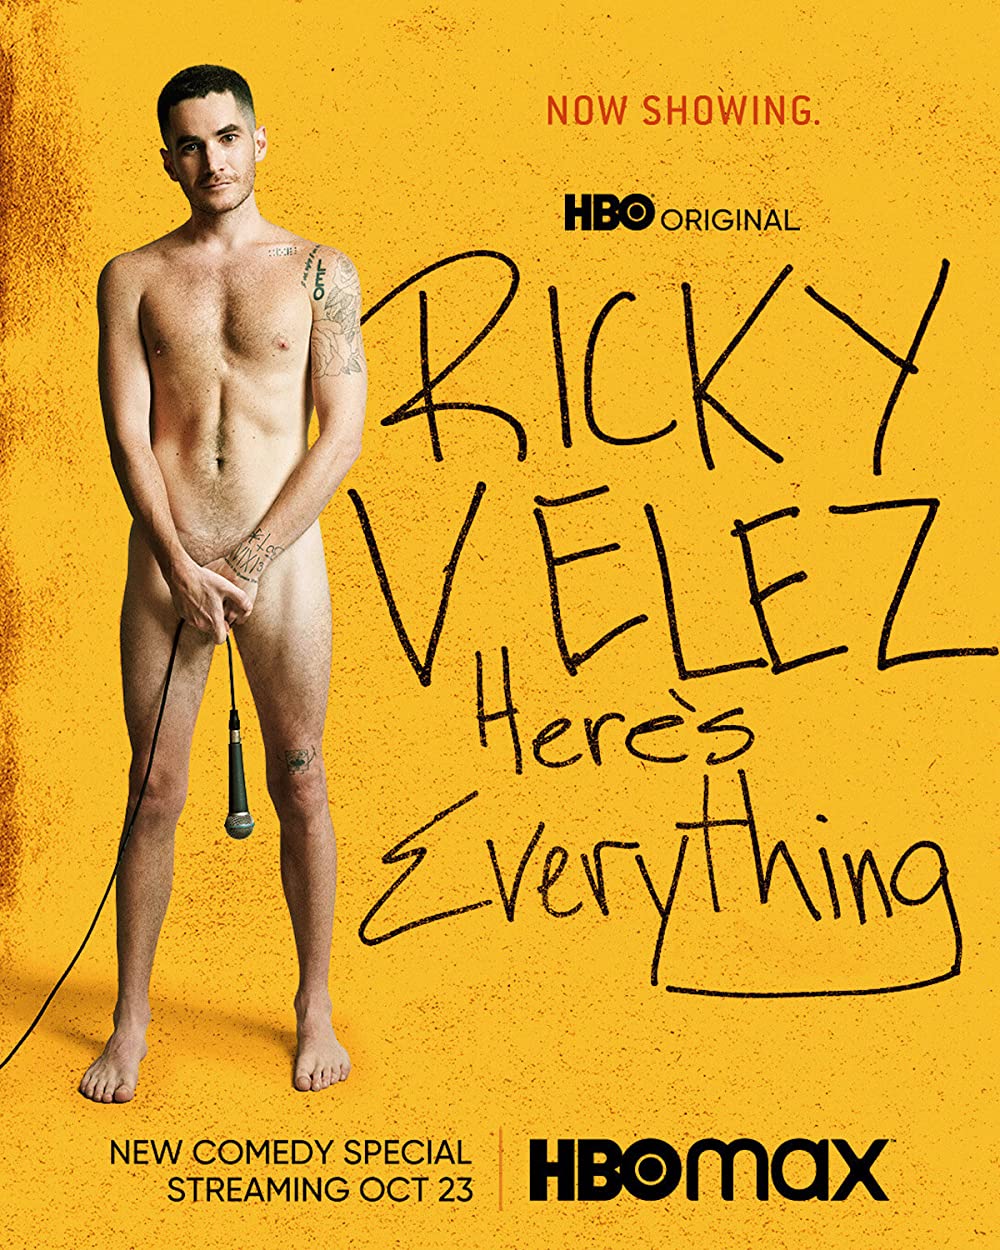 Ricky Velez: Here's Everything (2021) 